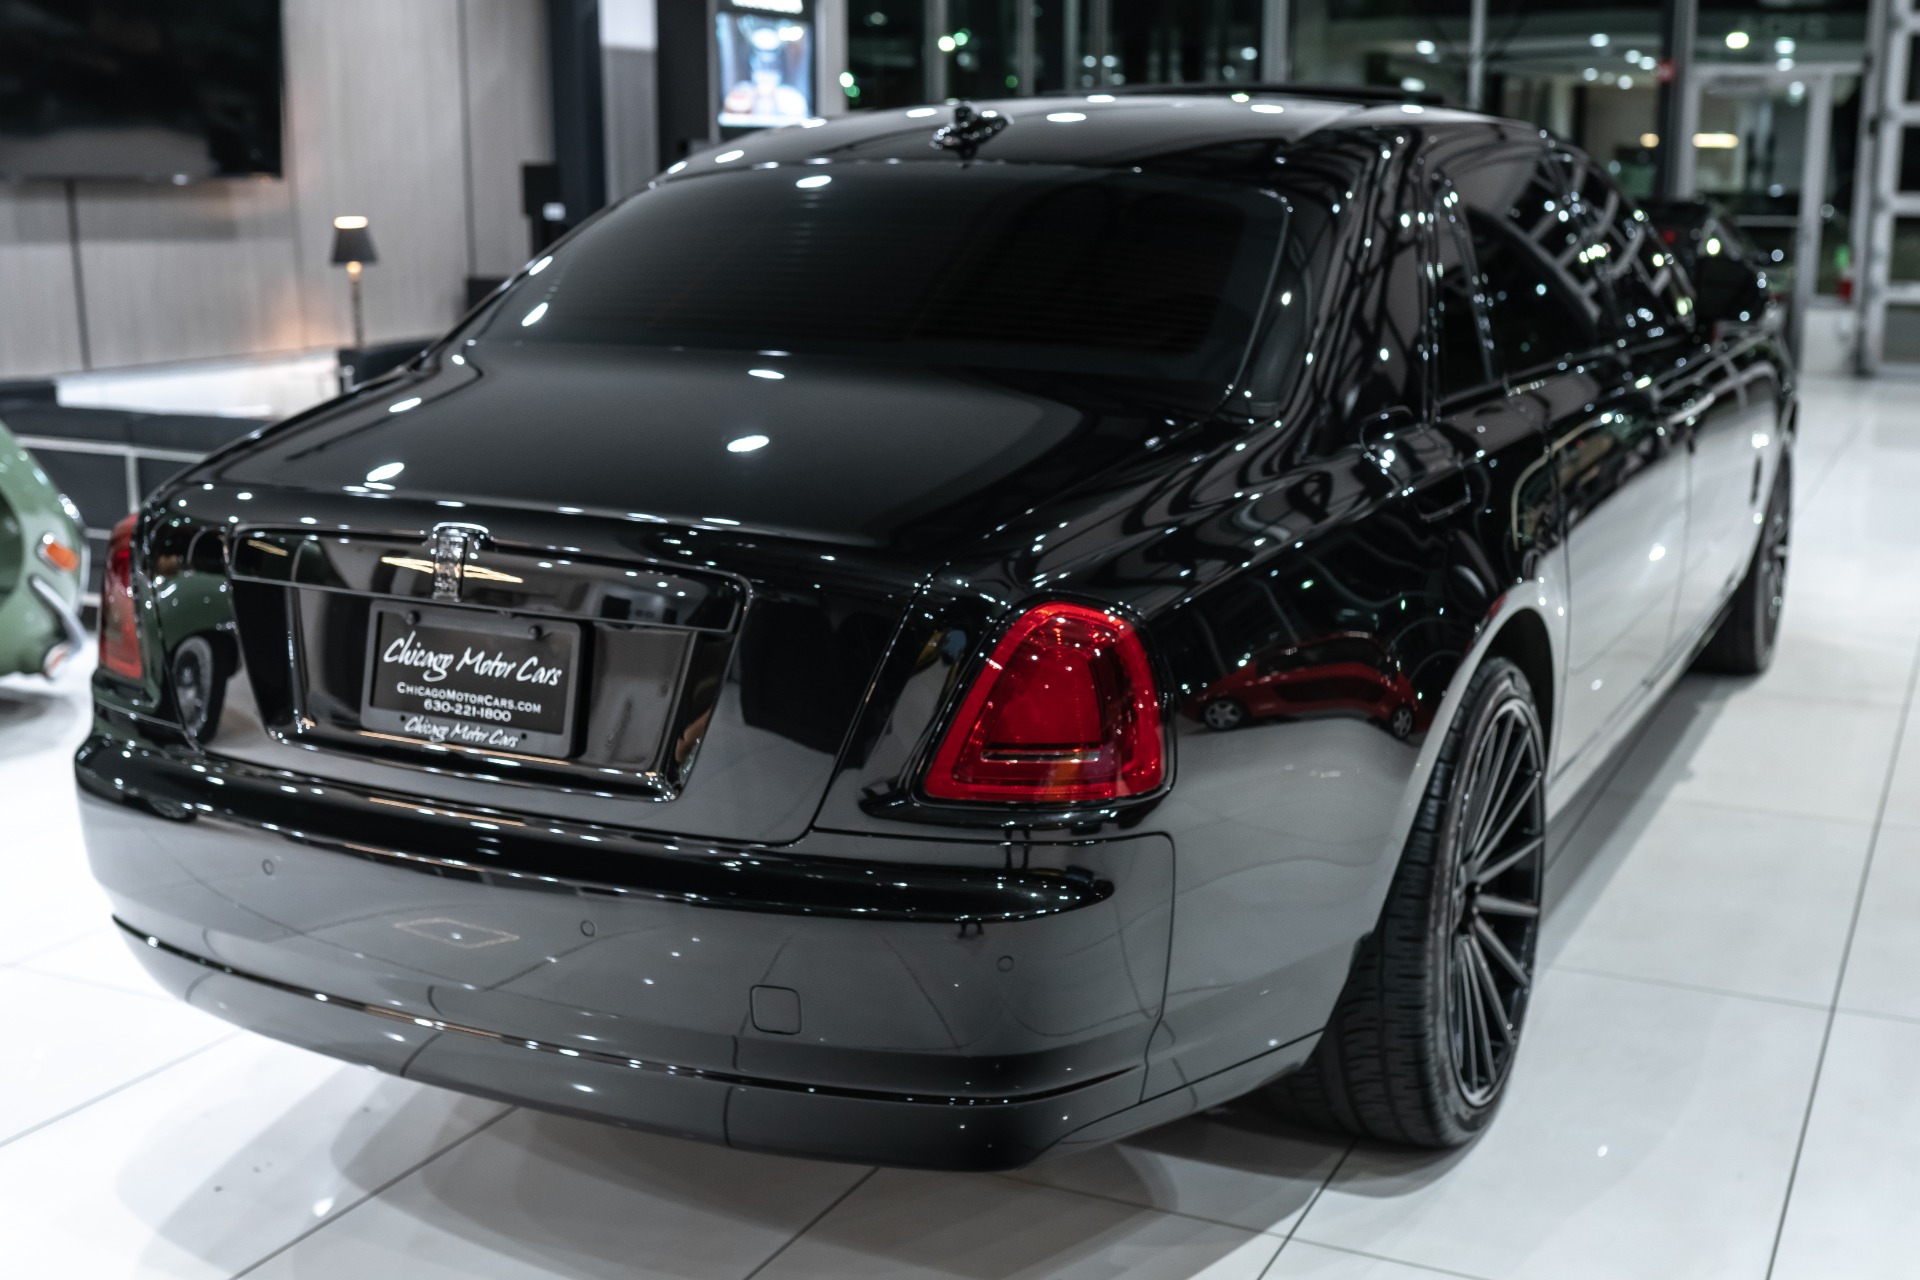 Used-2015-Rolls-Royce-Ghost-Extended-Wheelbase-Diamond-Black-on-Black-Vossen-Wheels-LOADED